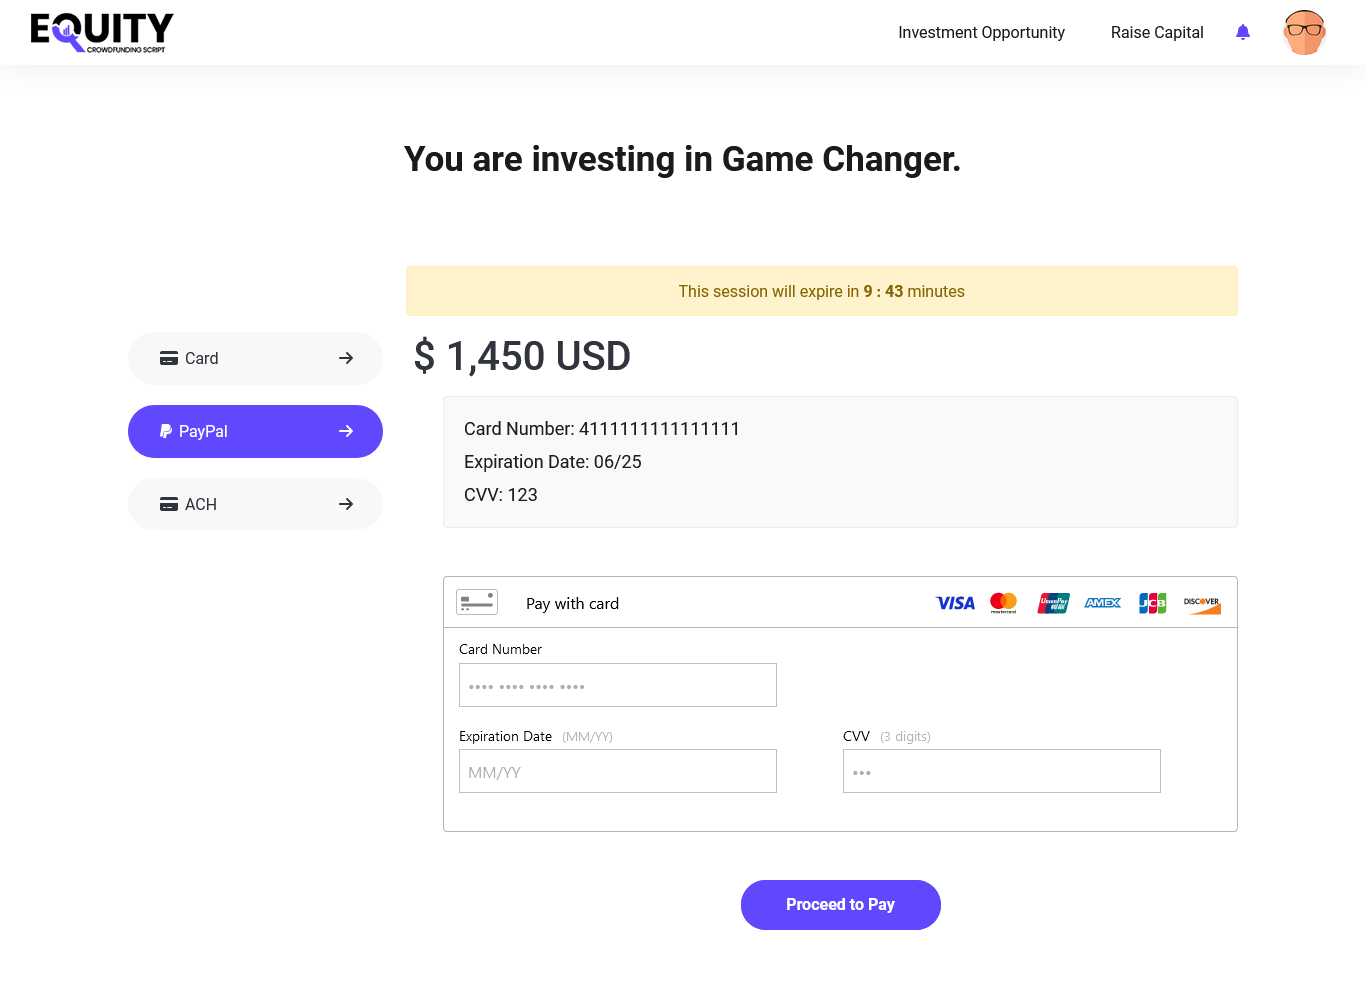 Selecciona PayPal como pasarela de pago para realizar el pago en el software de crowdfunding.